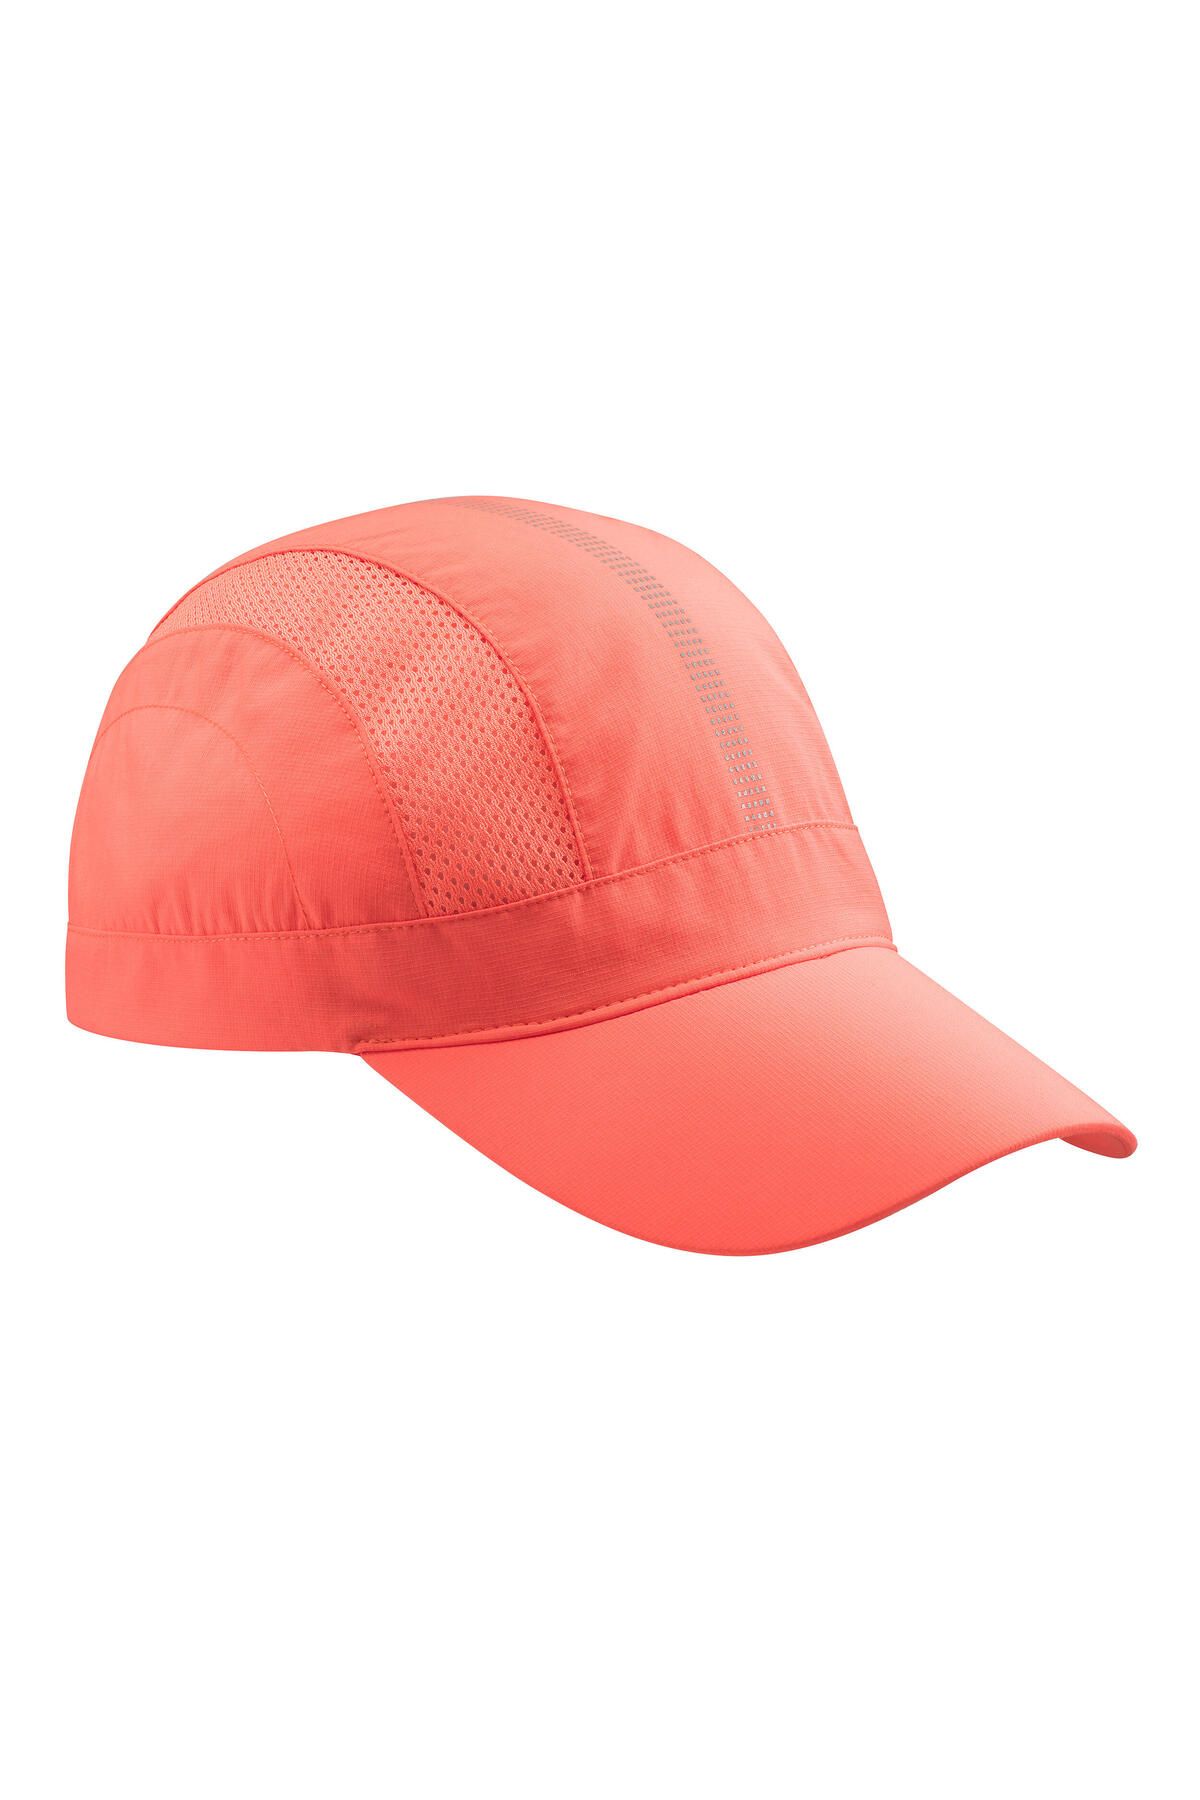 Decathlon Trekking Şapkası - Mercan Rengi - Mt500